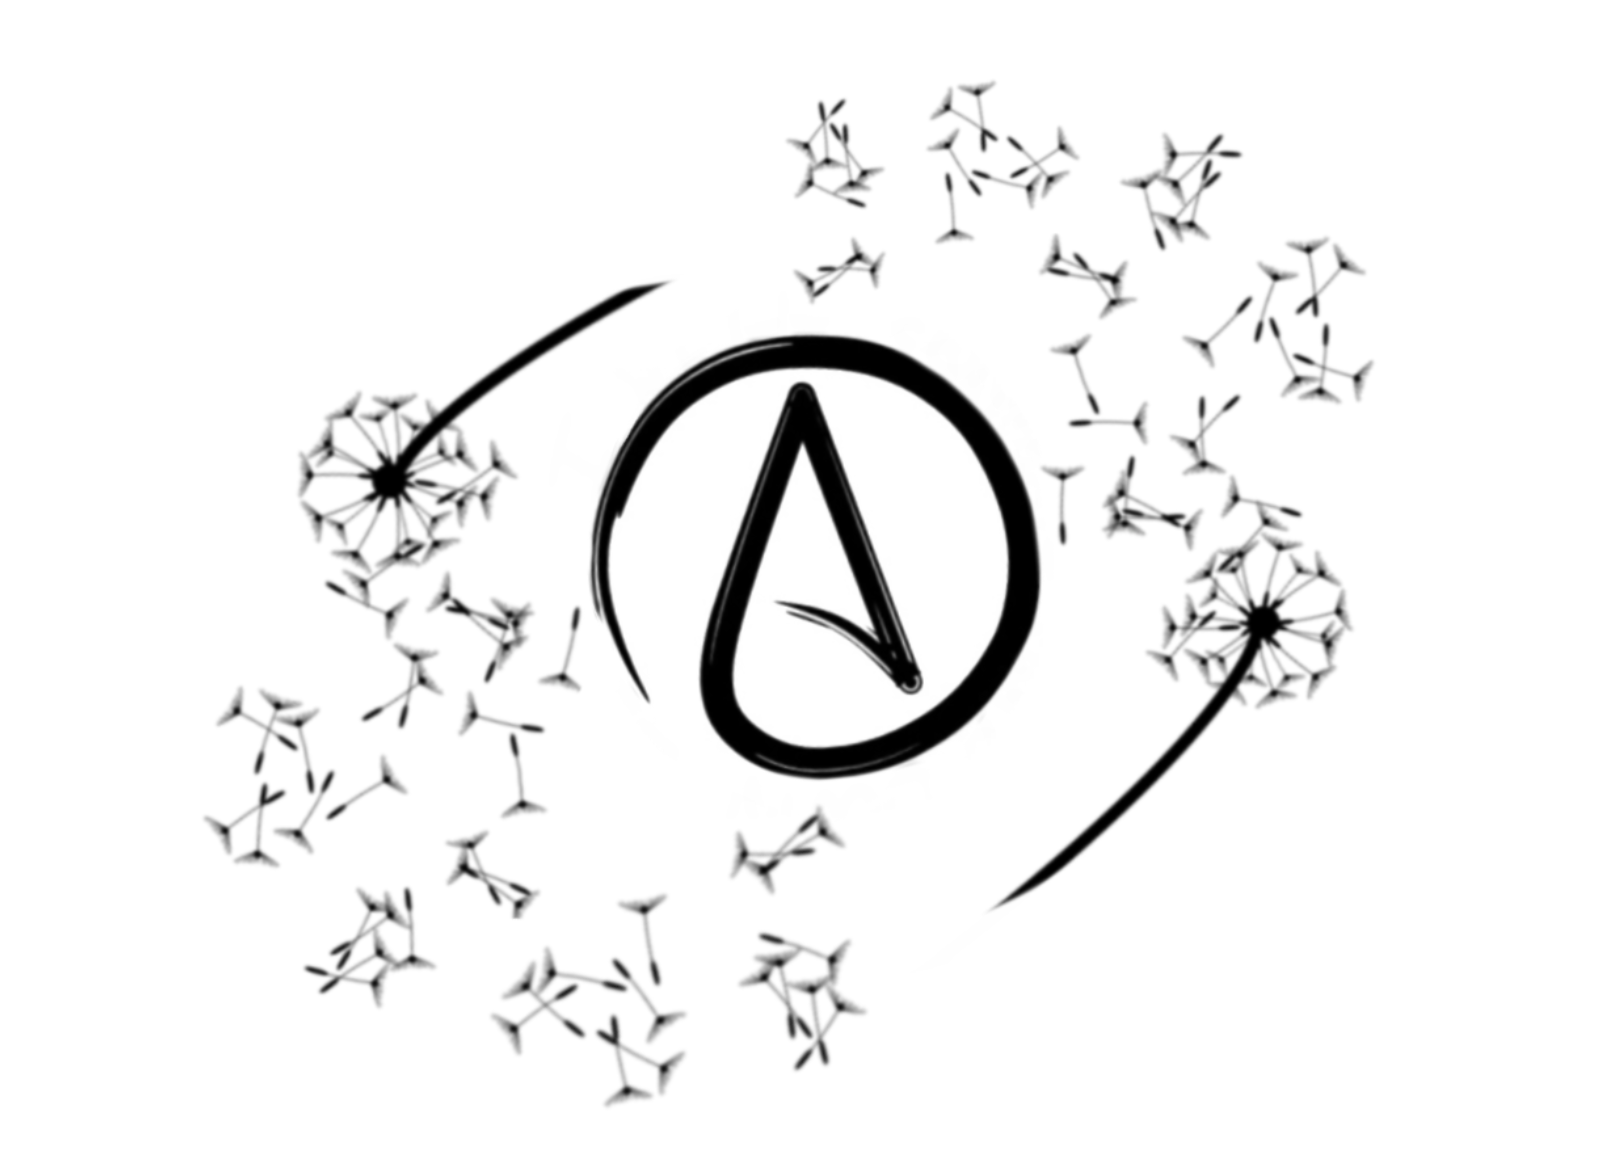 Finally Free Atheist Tattoo Design by MistyW0lf on DeviantArt